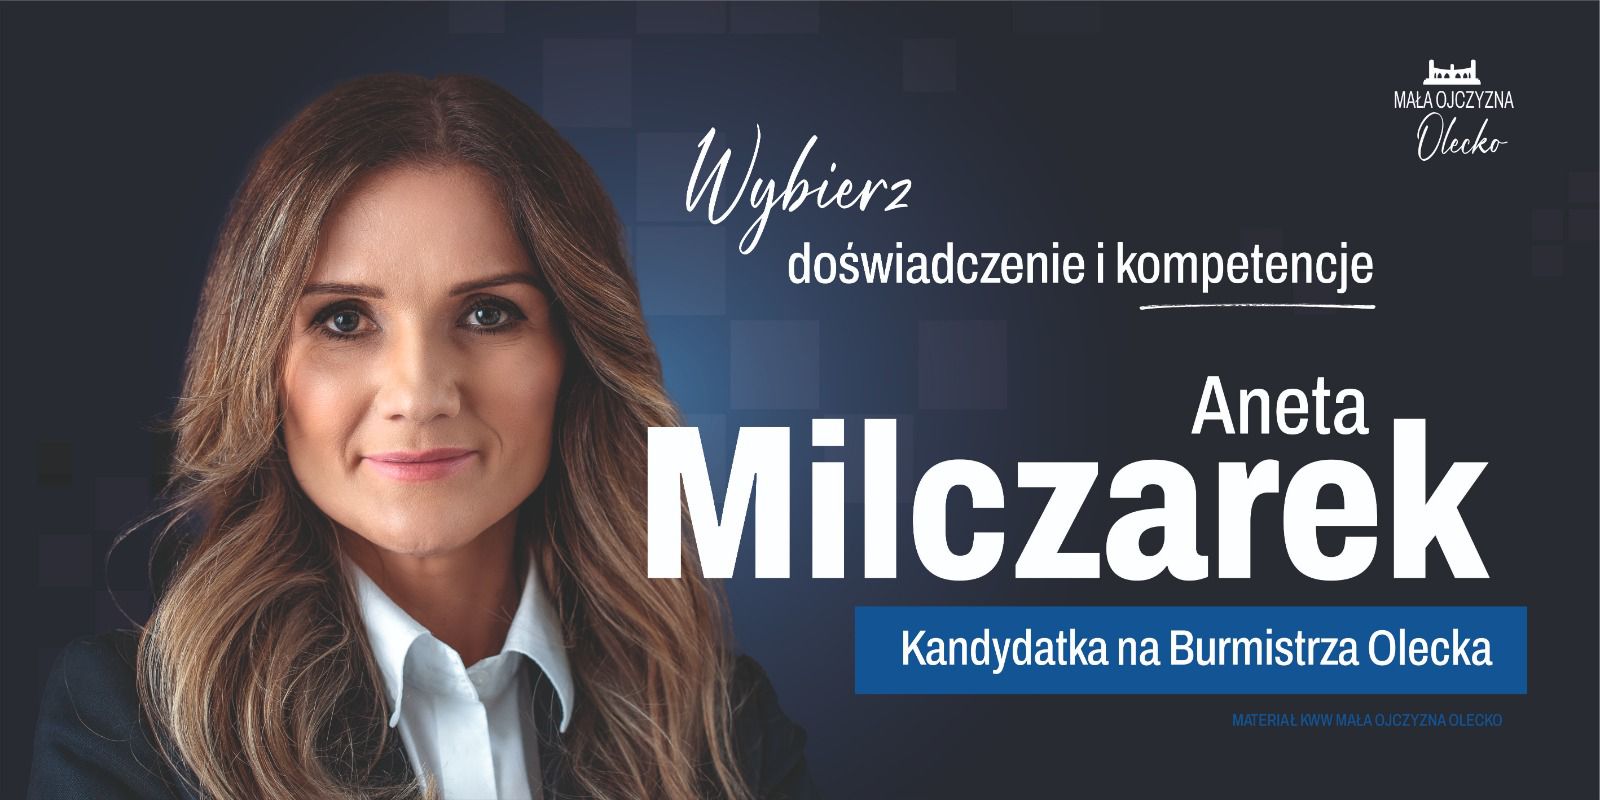 Aneta Milczarek